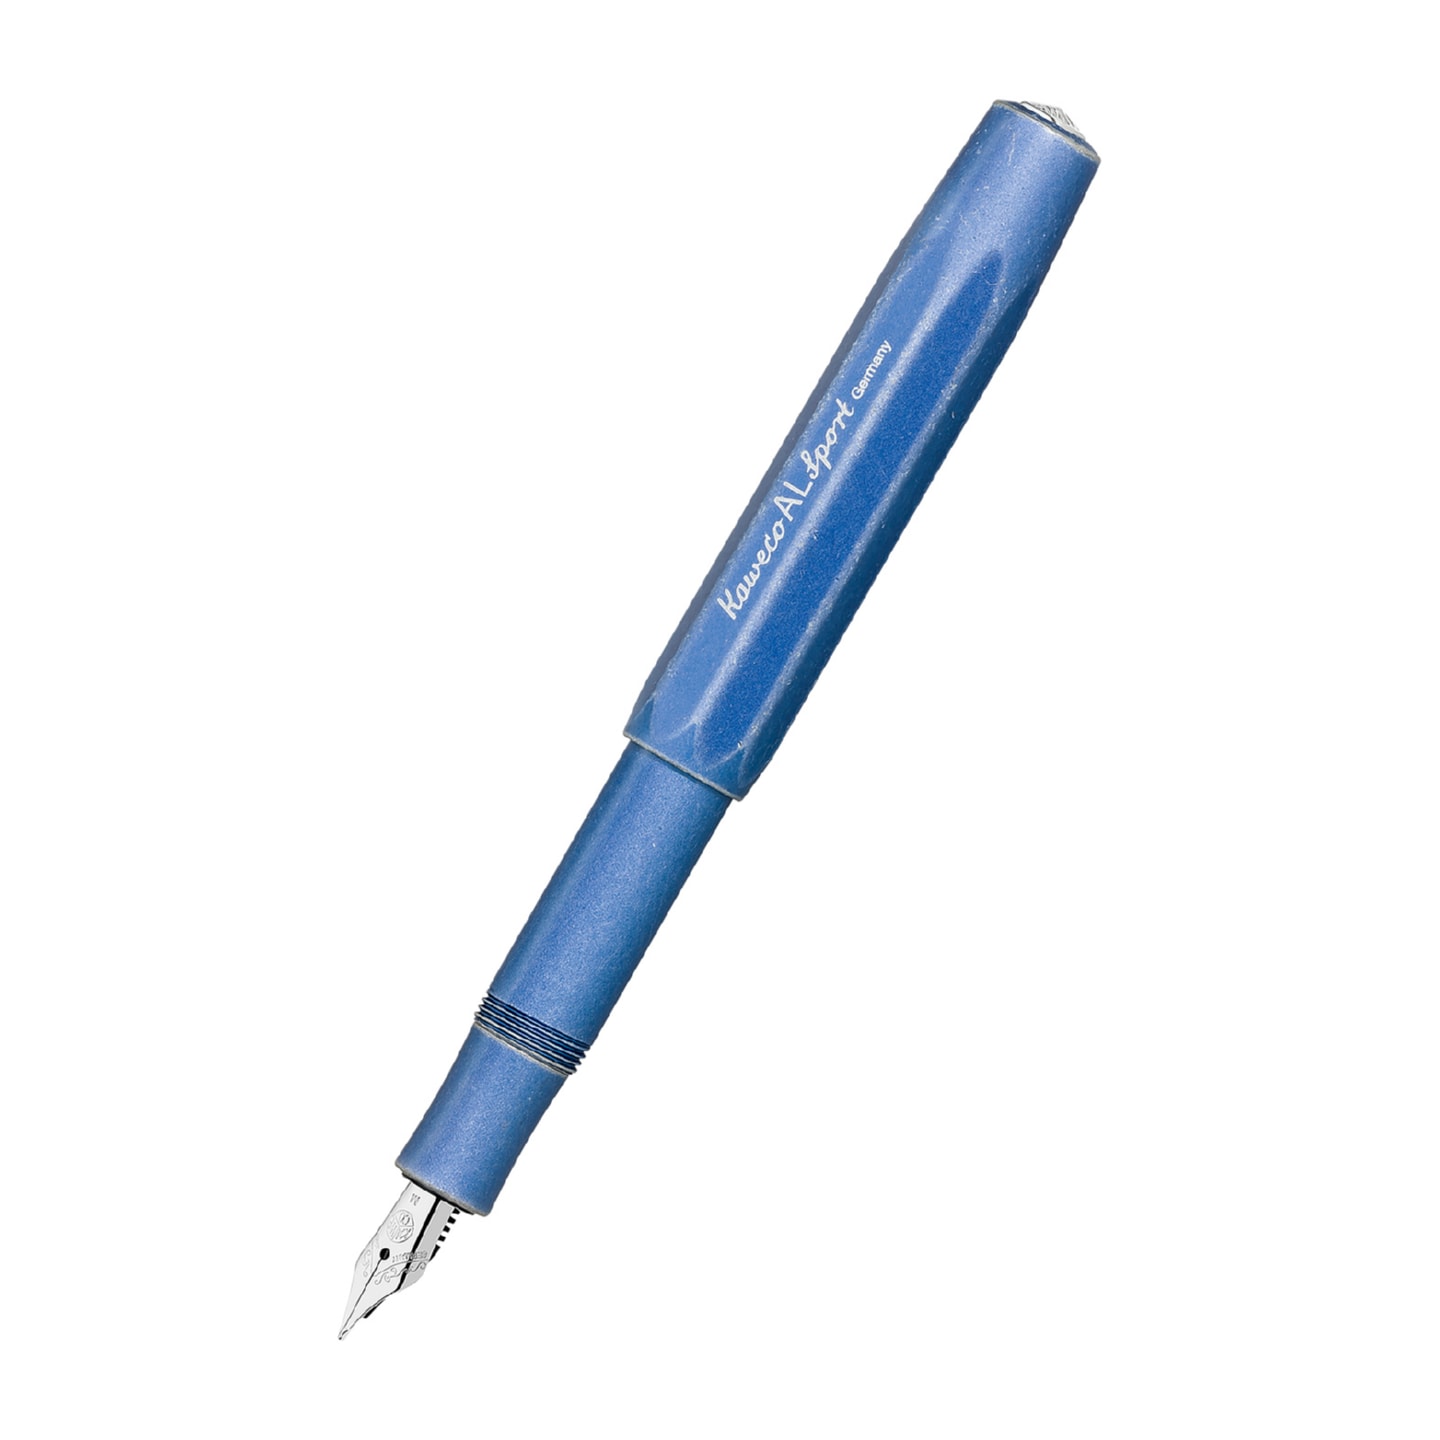 Ручка перьевая KAWECO AL Sport Stonewashed Синий 5 вариантов пера